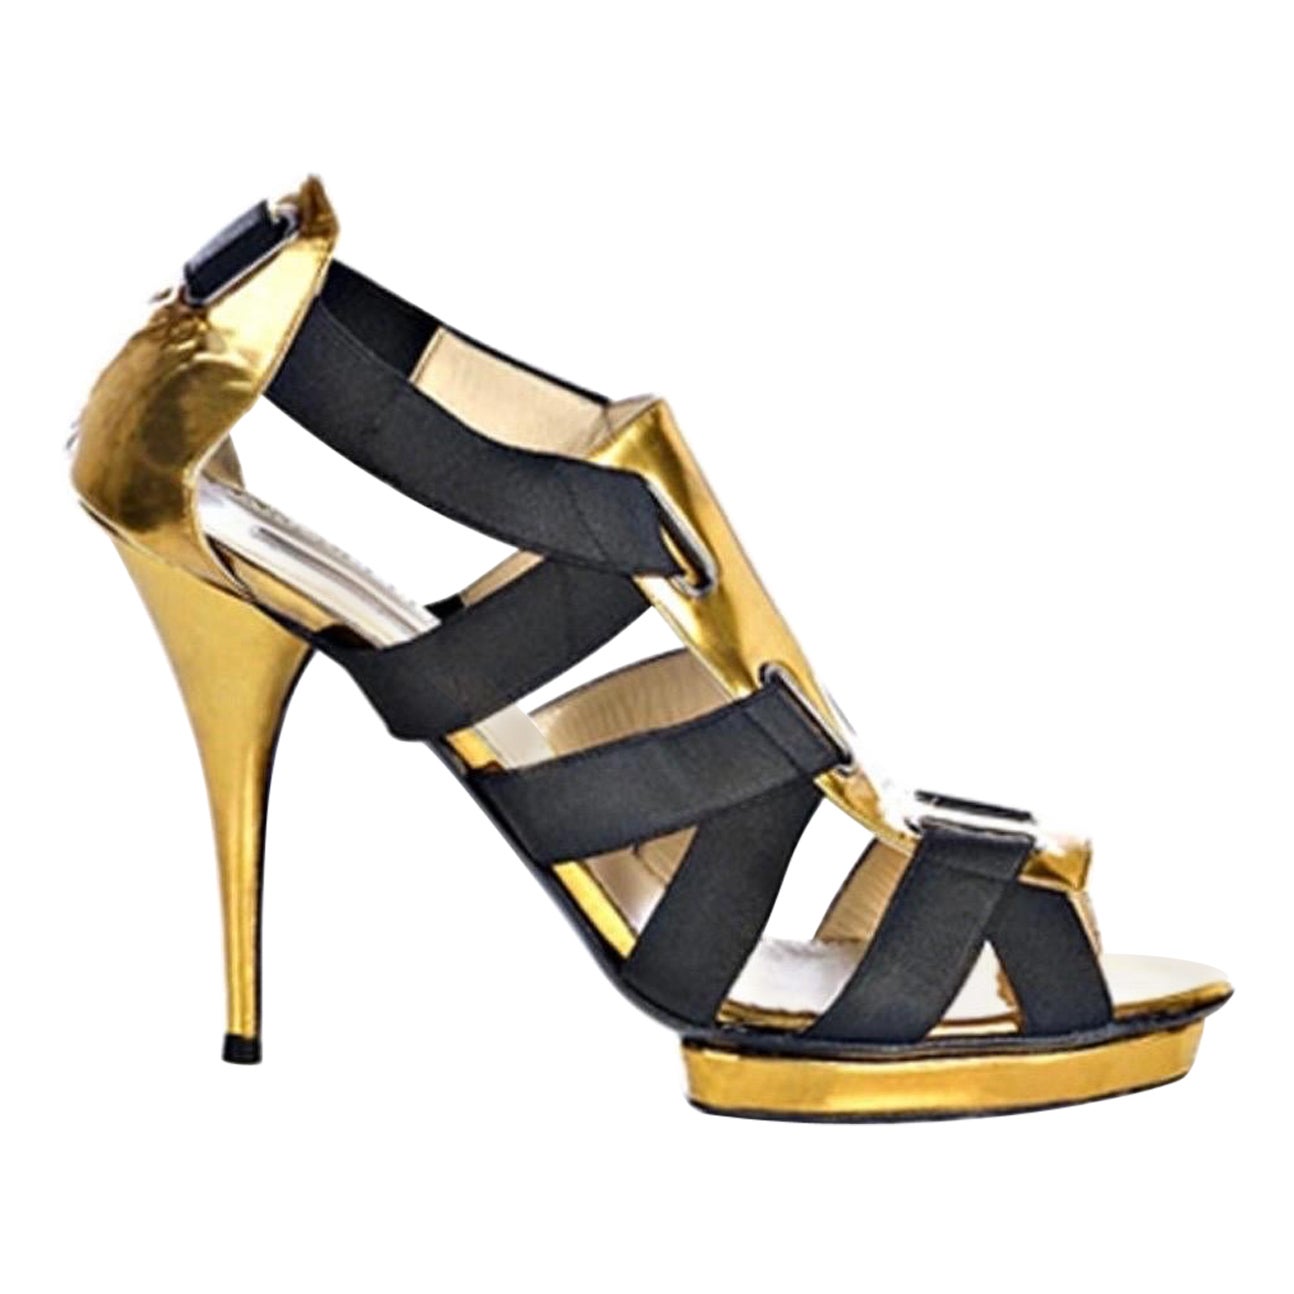 New Oscar de la Renta Gold Black Corset Sandals Size 37 - 7 For Sale